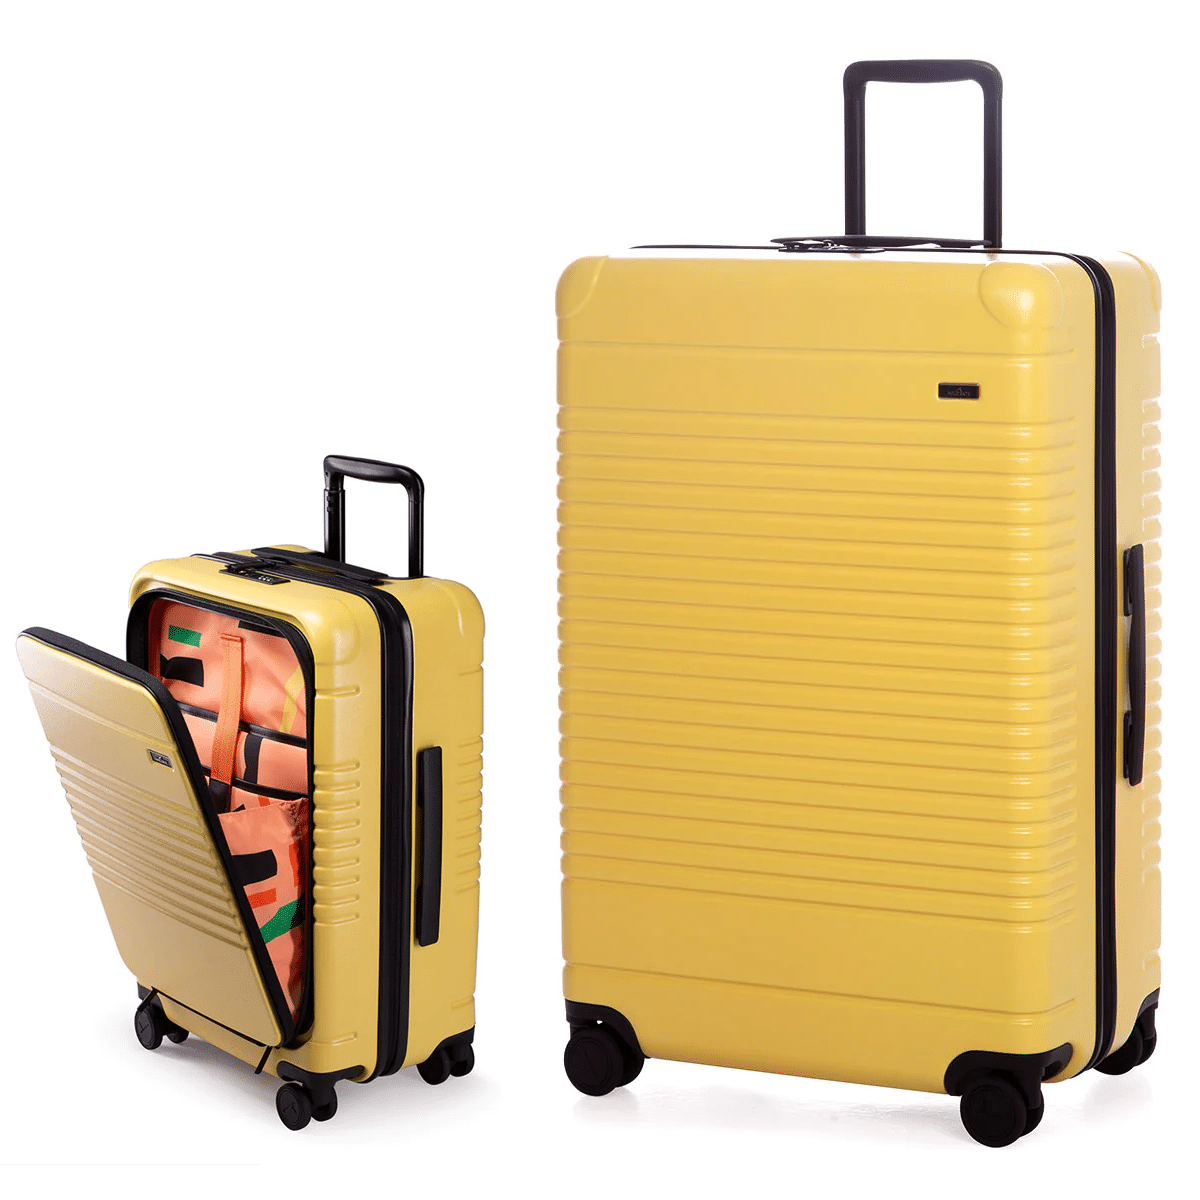 Arlo Skye The Zipper stylish luggage set